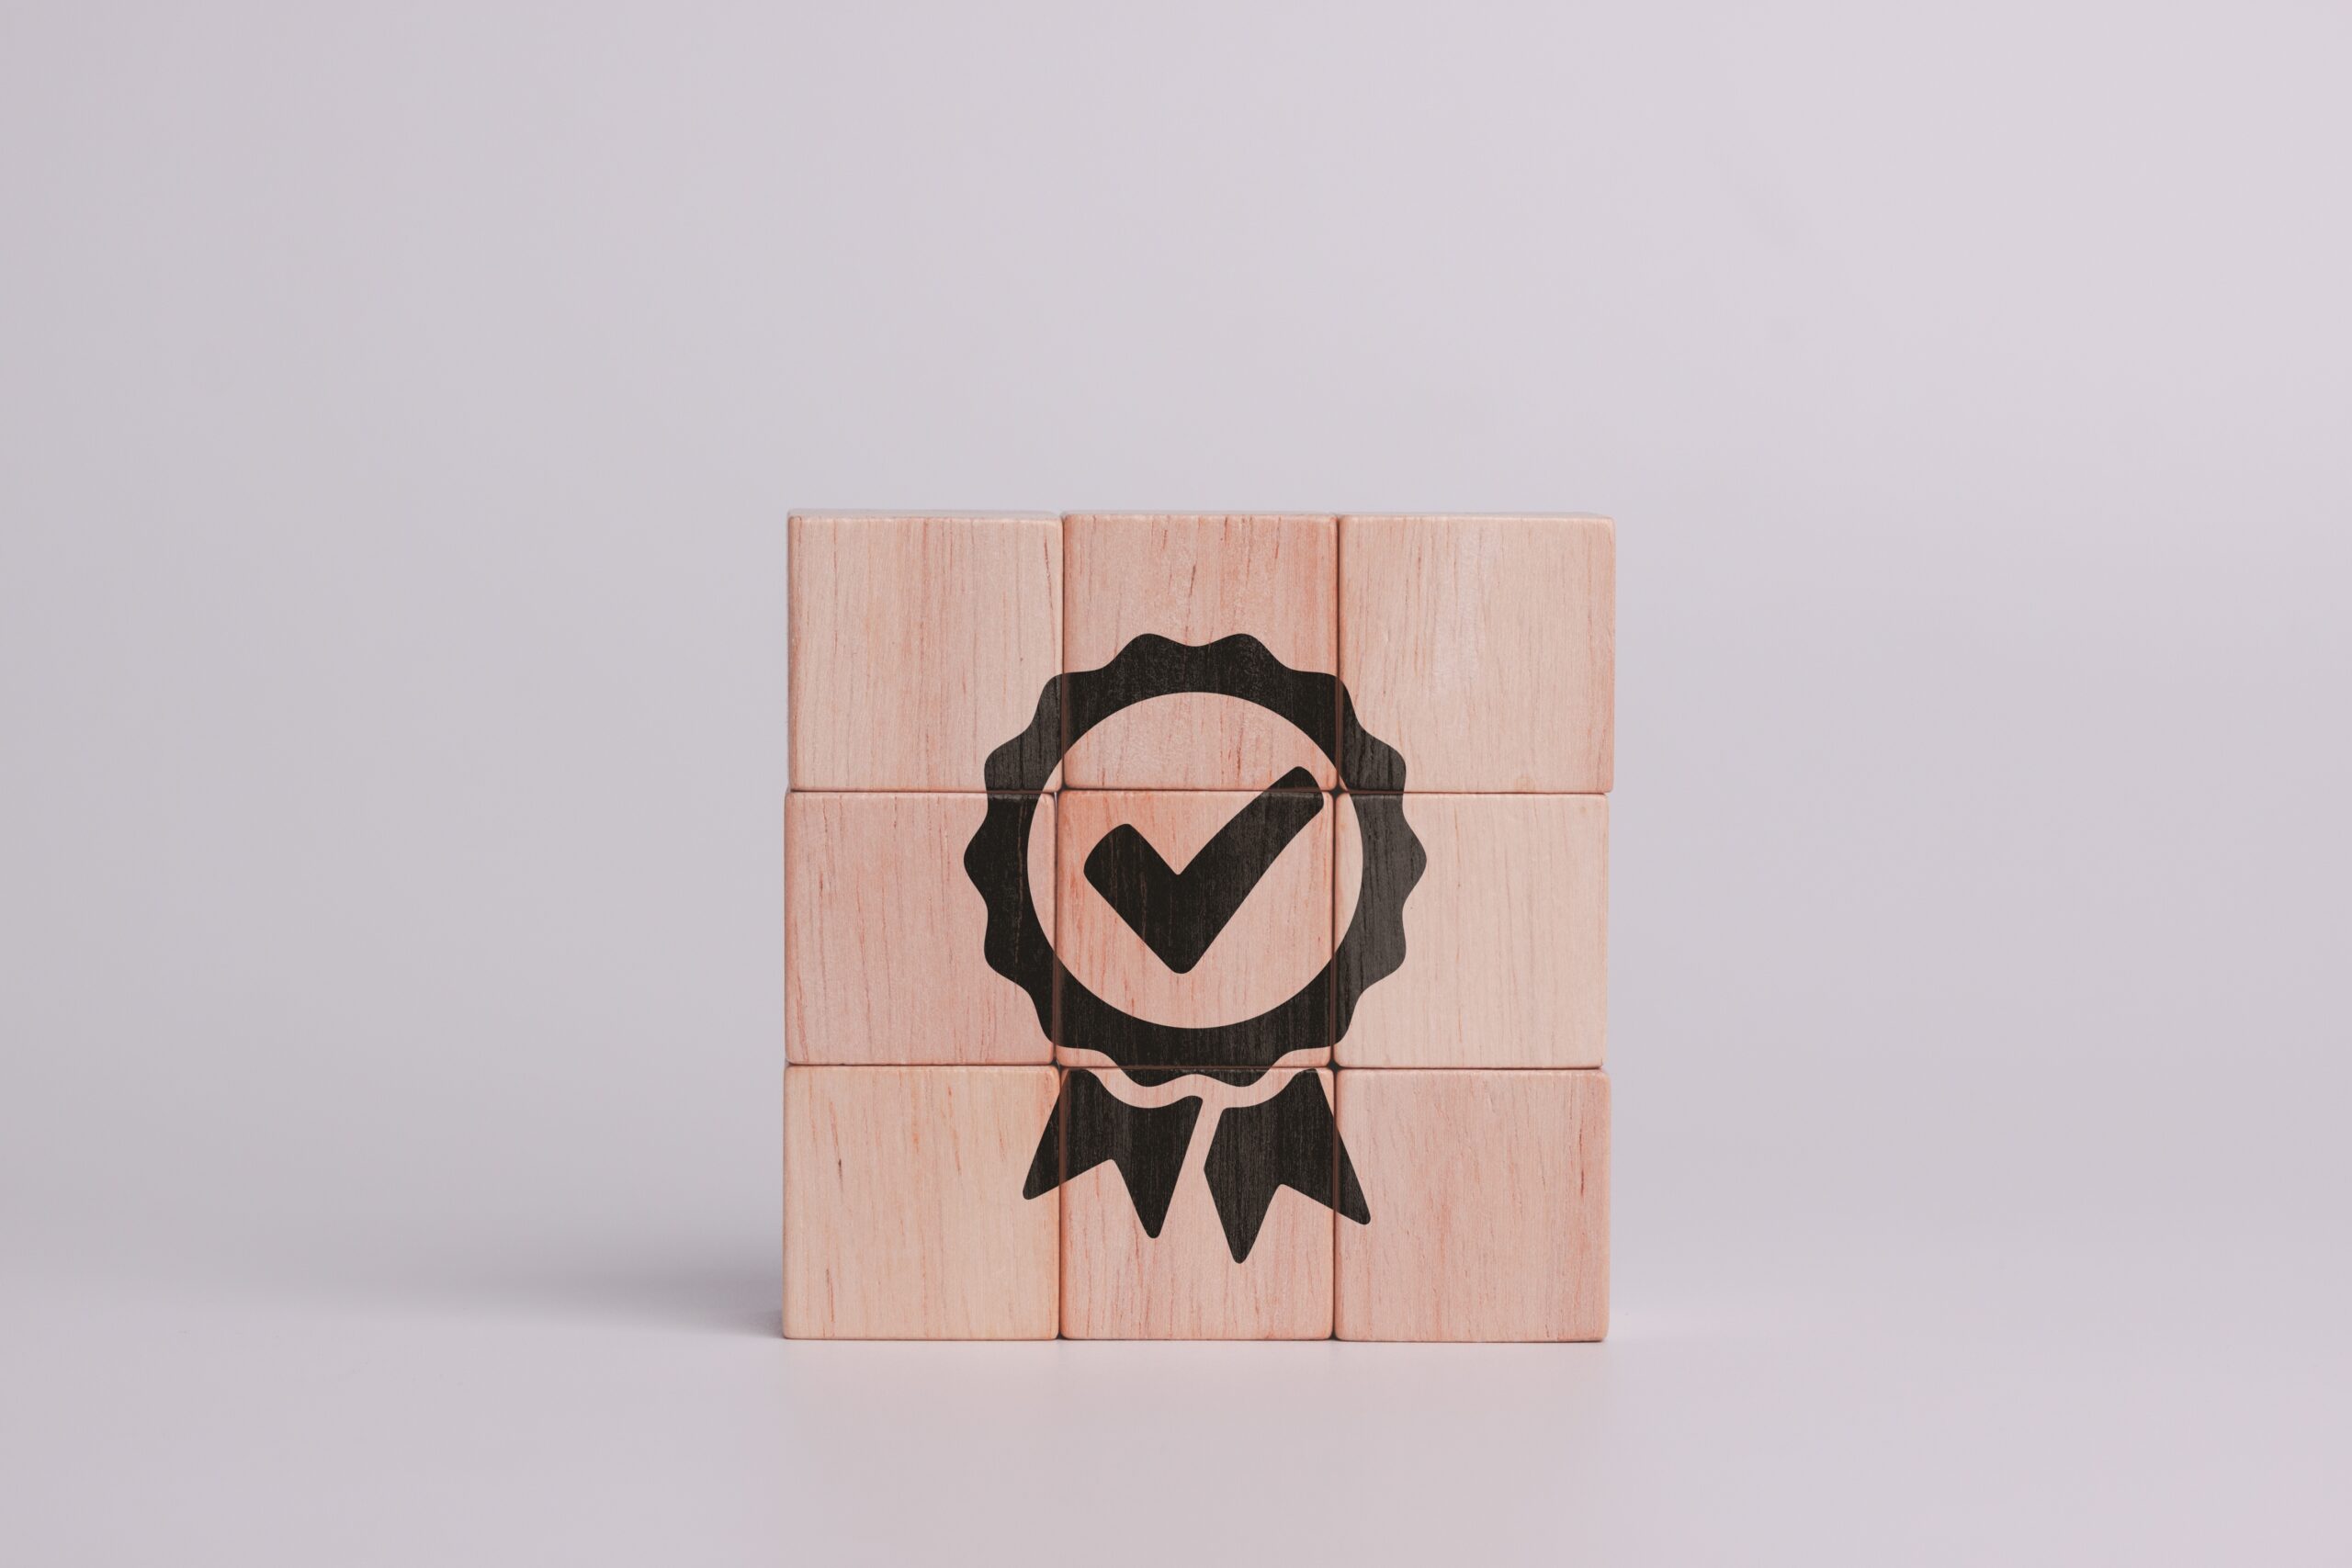 inopla Technlologie Garantie: Auszeichnung auf Holzwürfel mit grauem Hintergrund